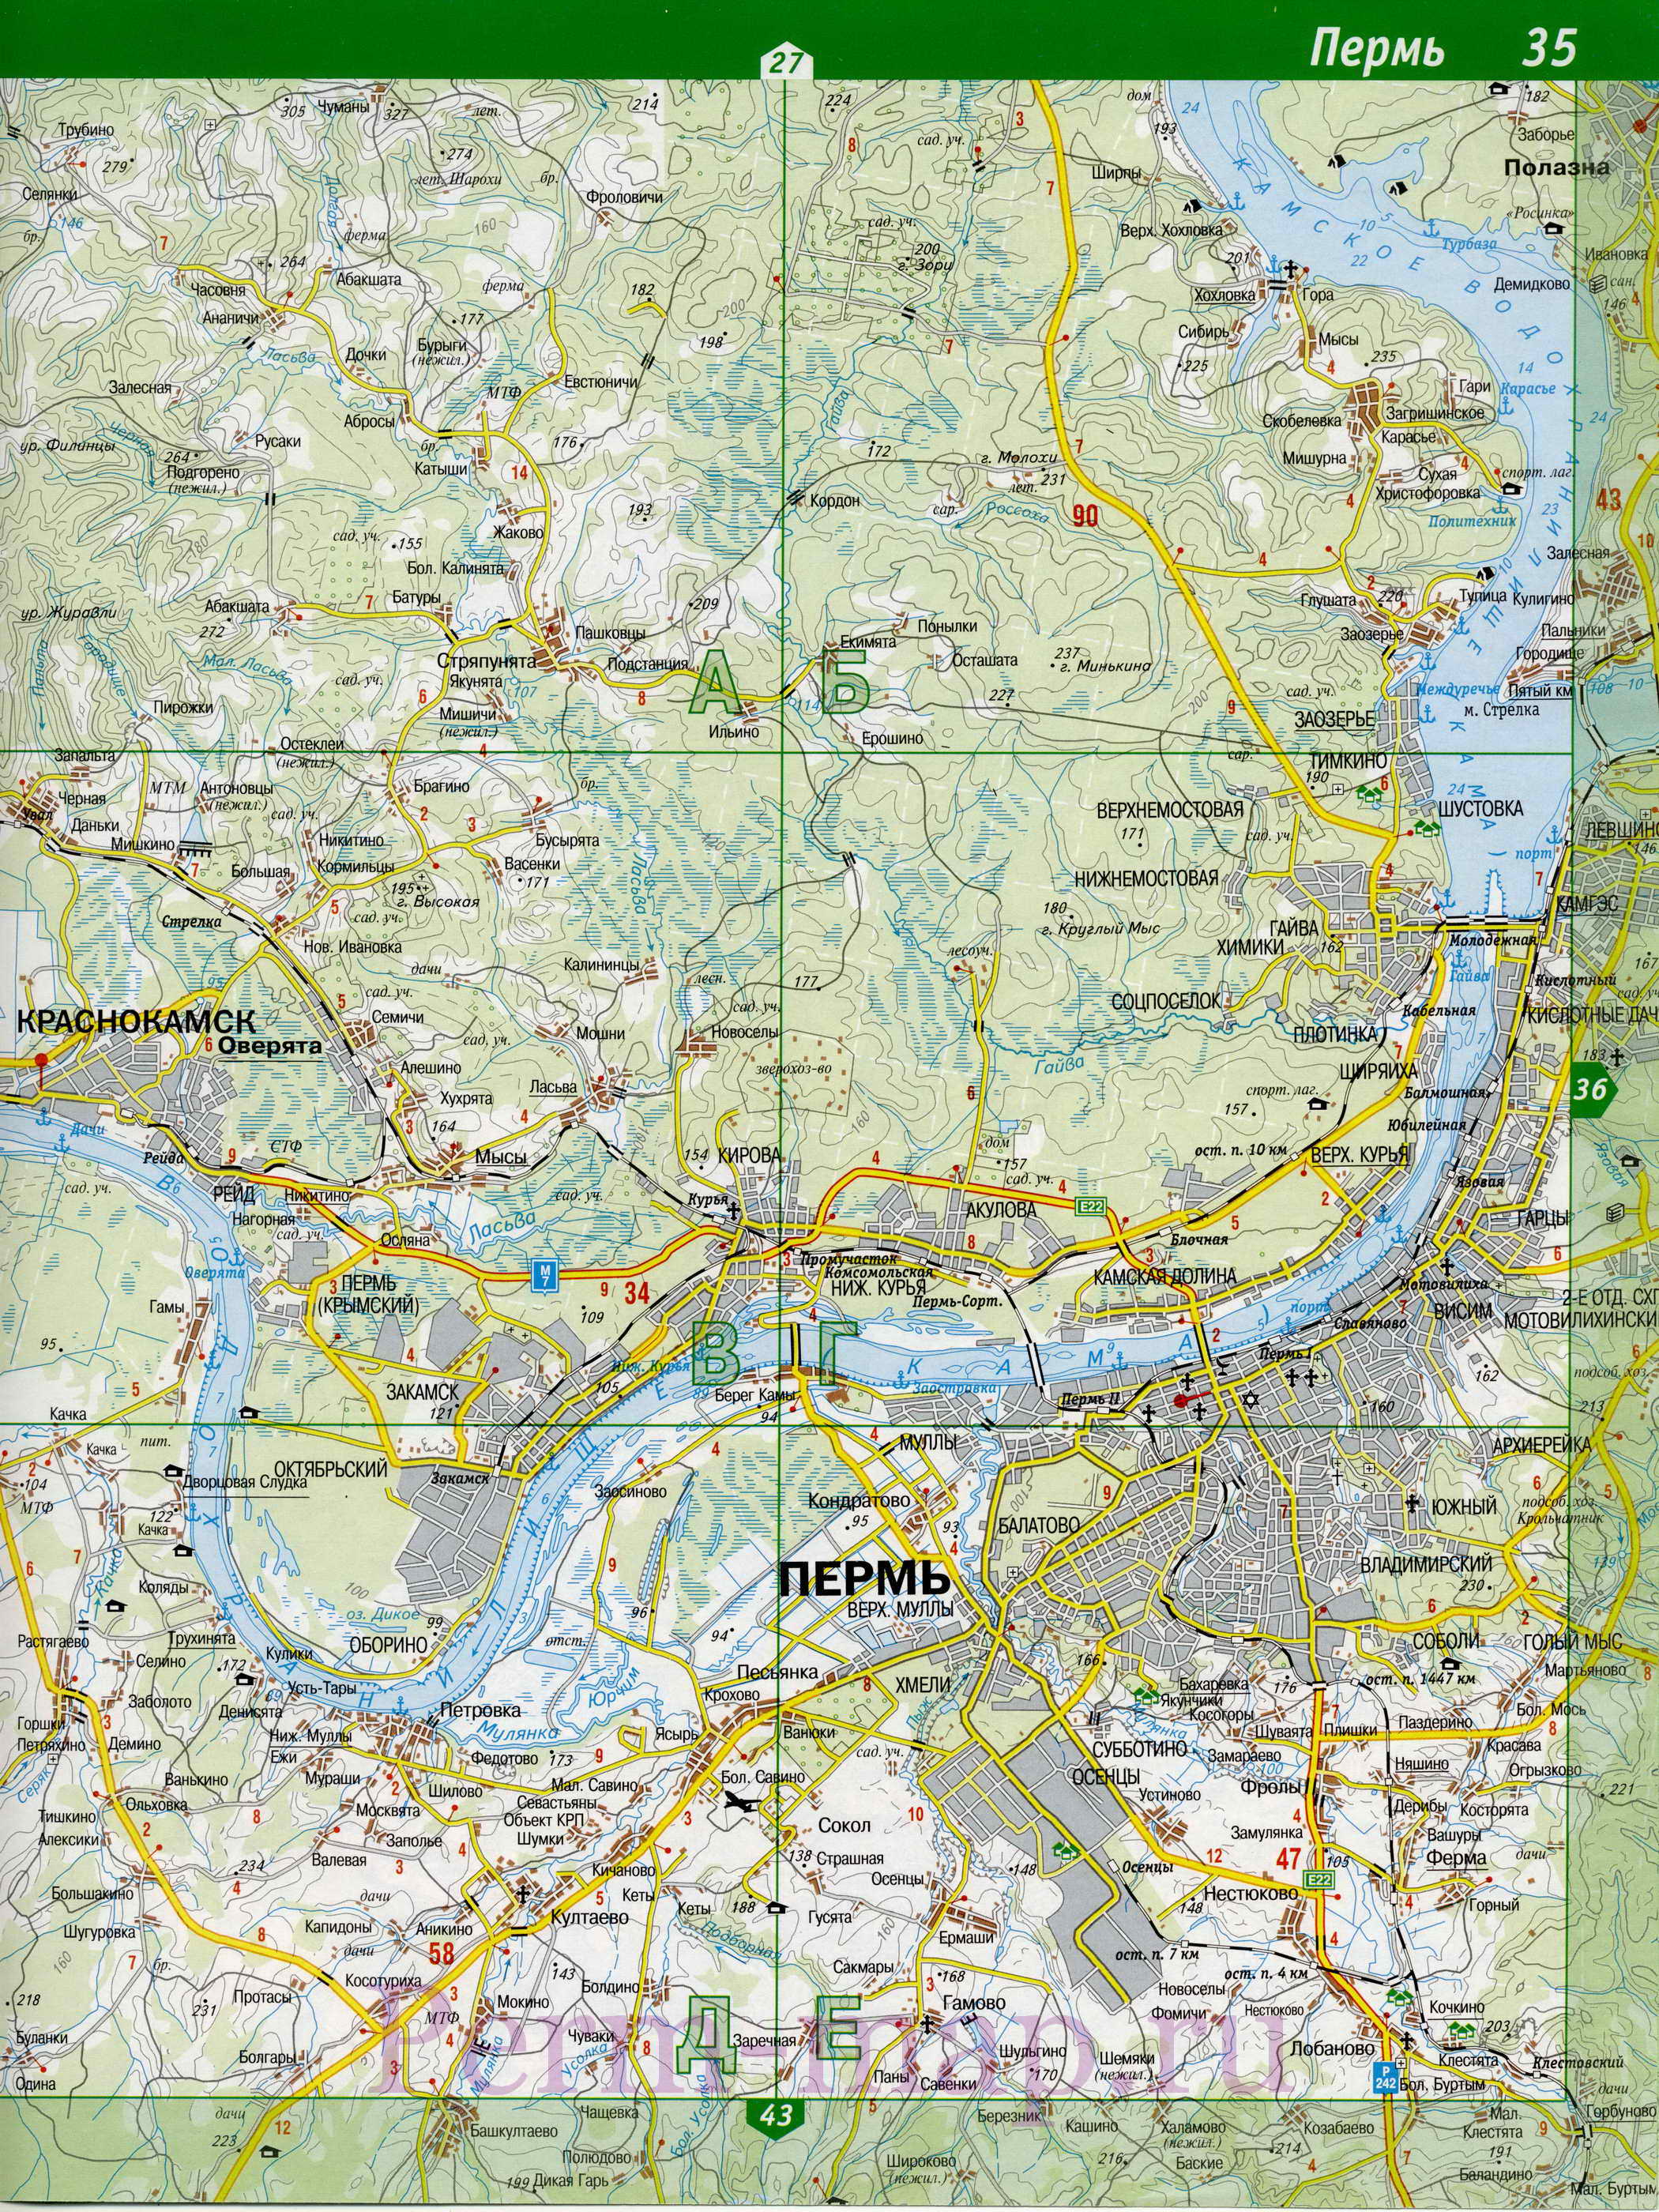  Карта Перми автомобильная. Карта Перми и пригородов. Карта окрестностей города Пермь, A0 - 